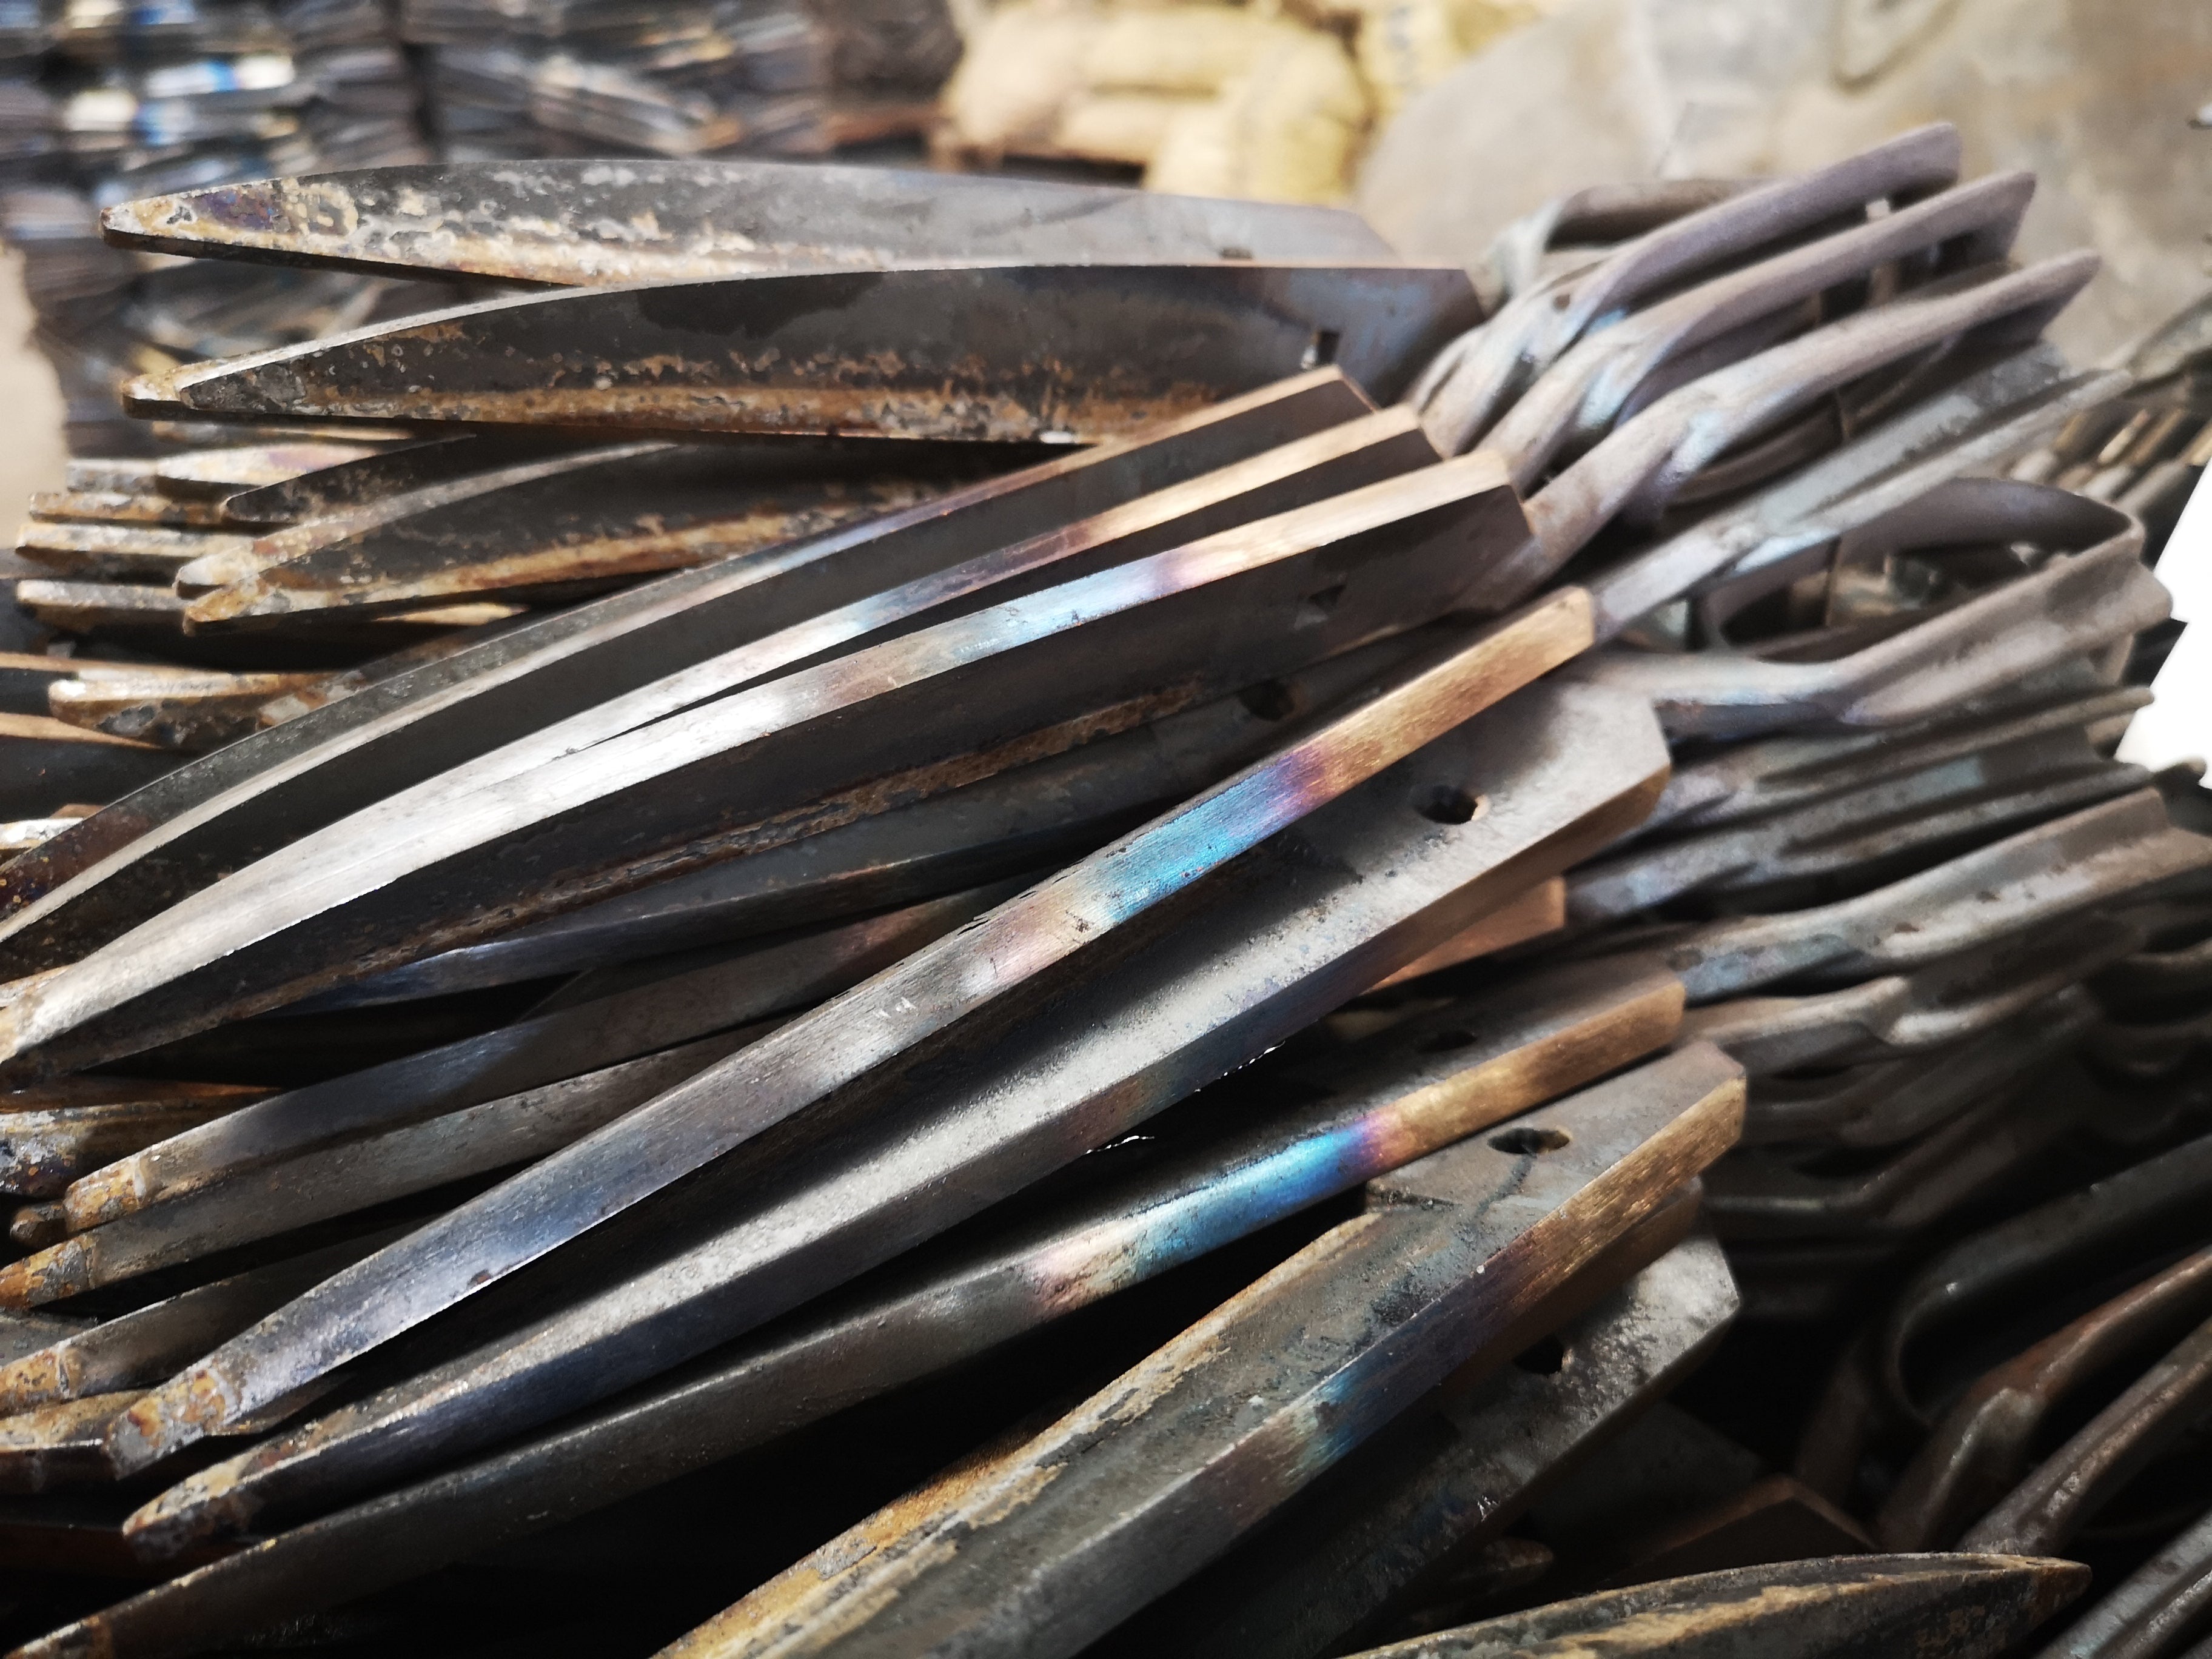 High Carbon Steel versus Stainless Steel – LDH Scissors